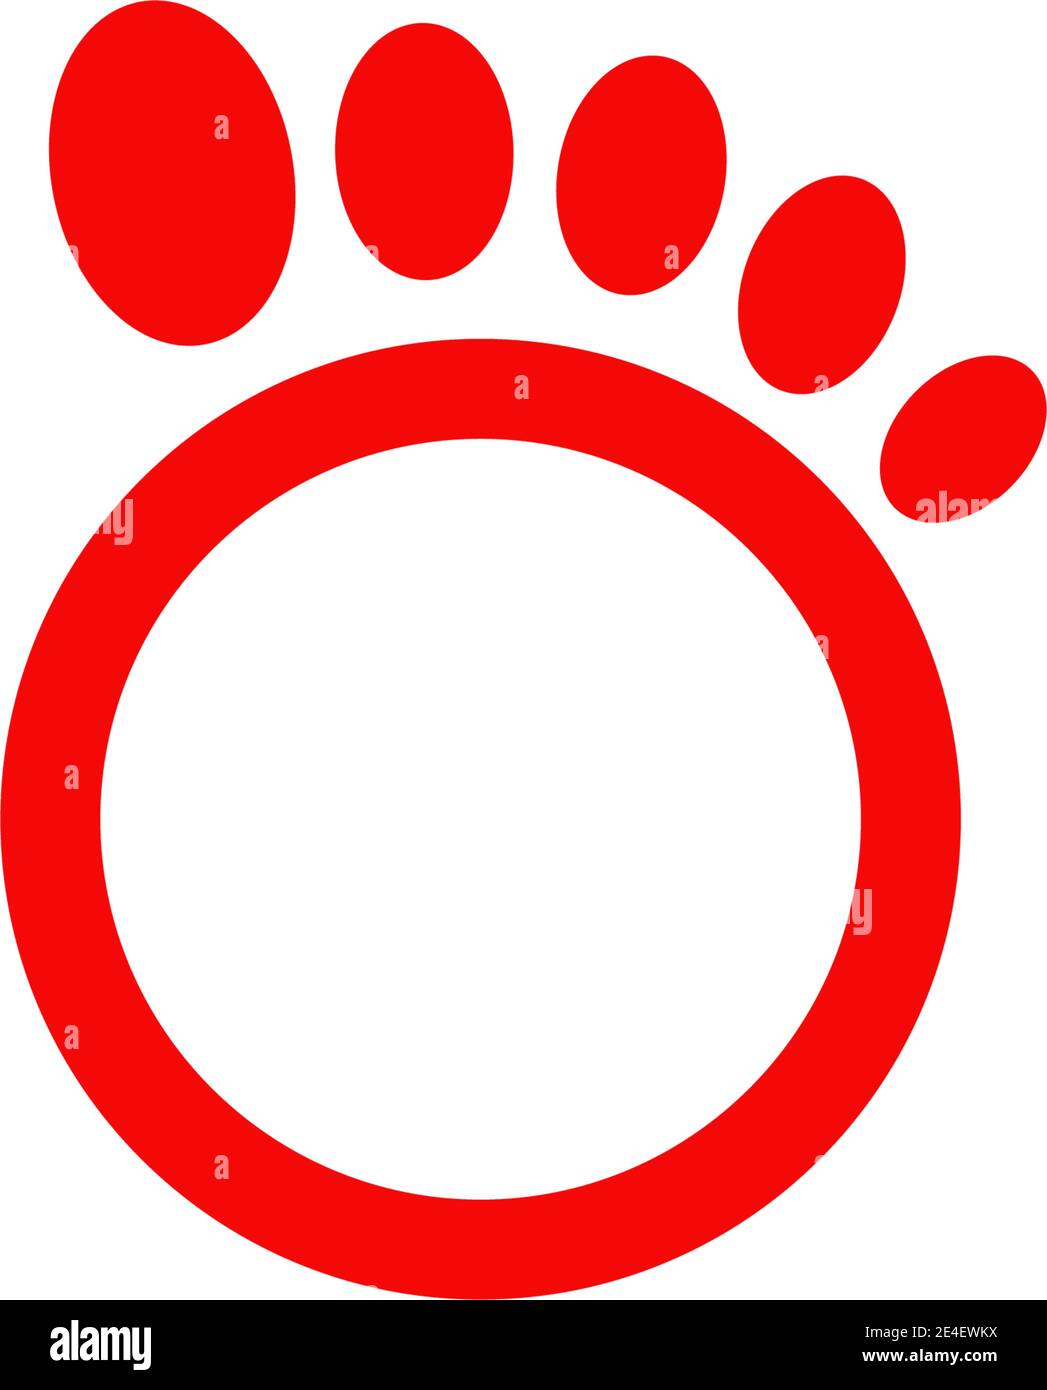 Palm foot icon logo design inspiration vector template Stock Vector